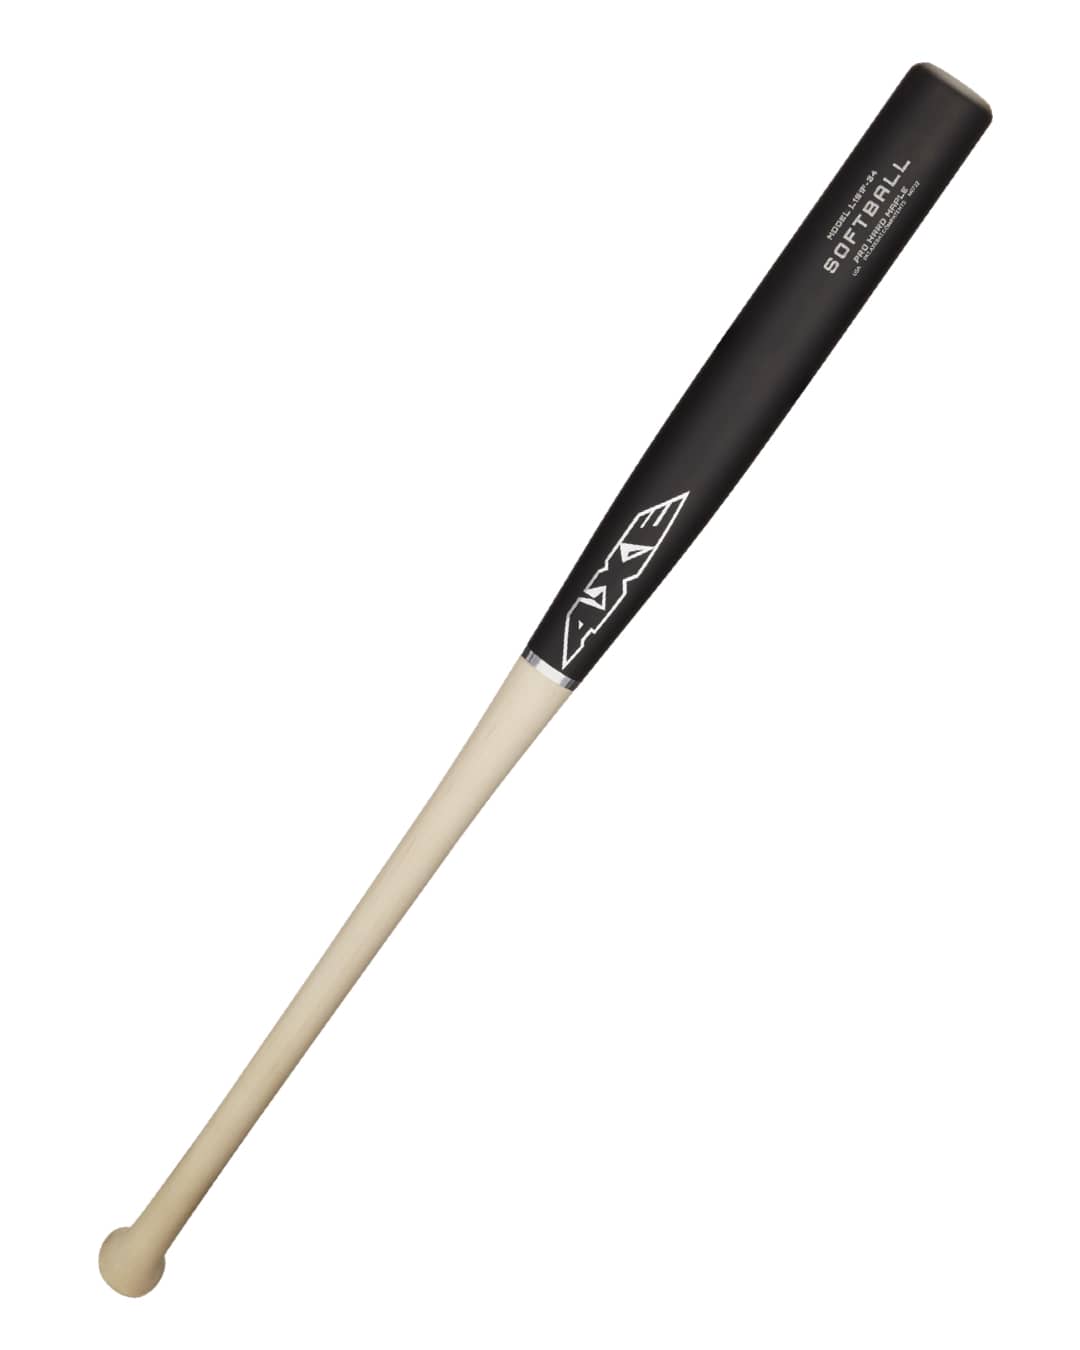 Pro Hard Maple Wood Softball Bat USA/ASA